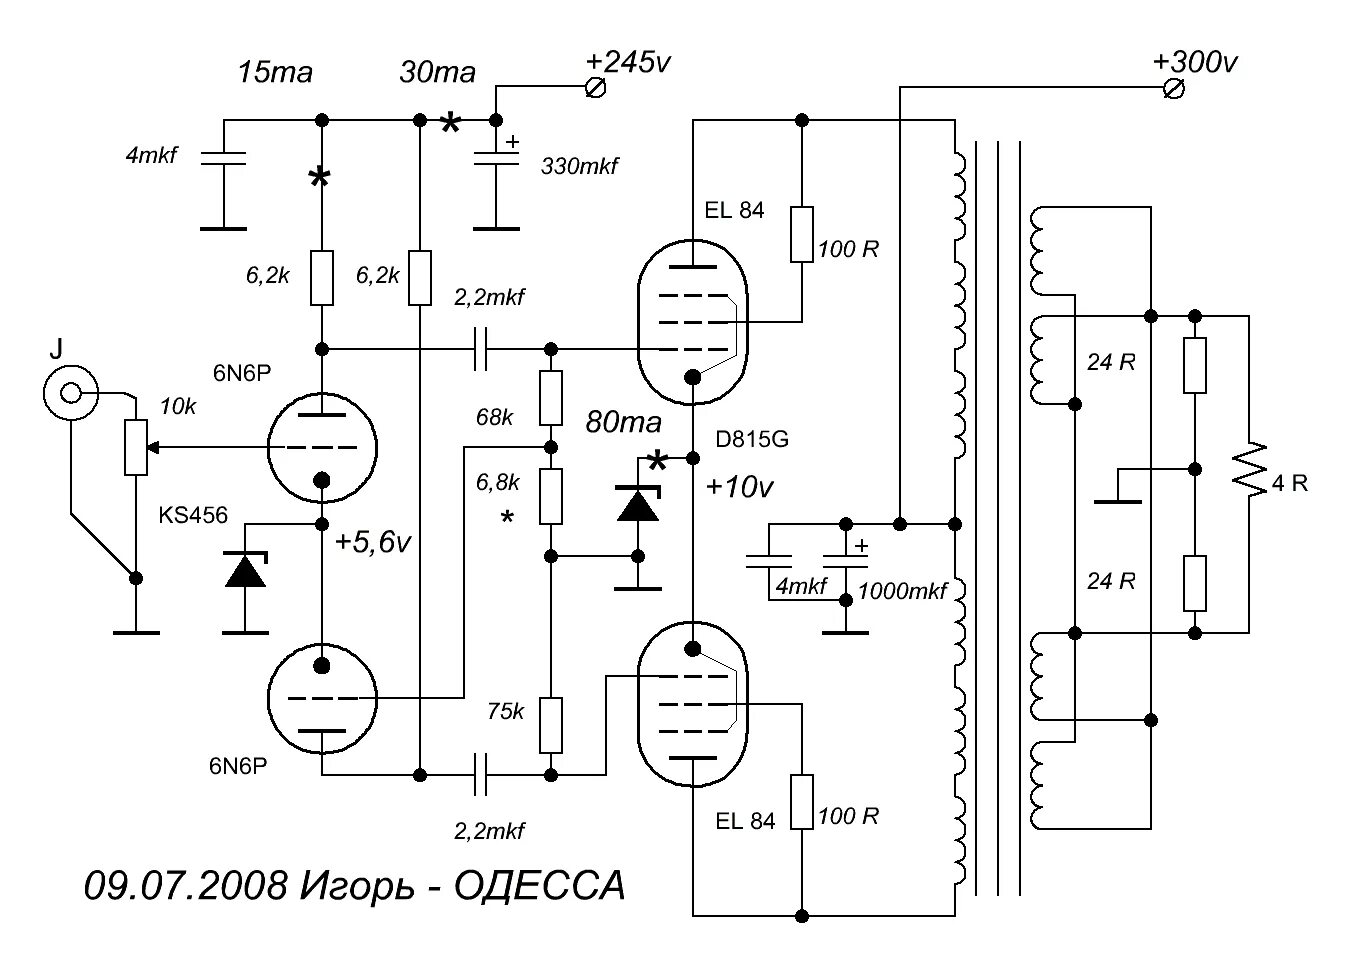 Трансформатор унч. Ламповый двухтактный ультралинейный усилитель ГУ 50. ГУ 29 двухтактный усилитель. Усилитель на ГУ-50 двухтактный. ГУ 29 схема усилителя НЧ.